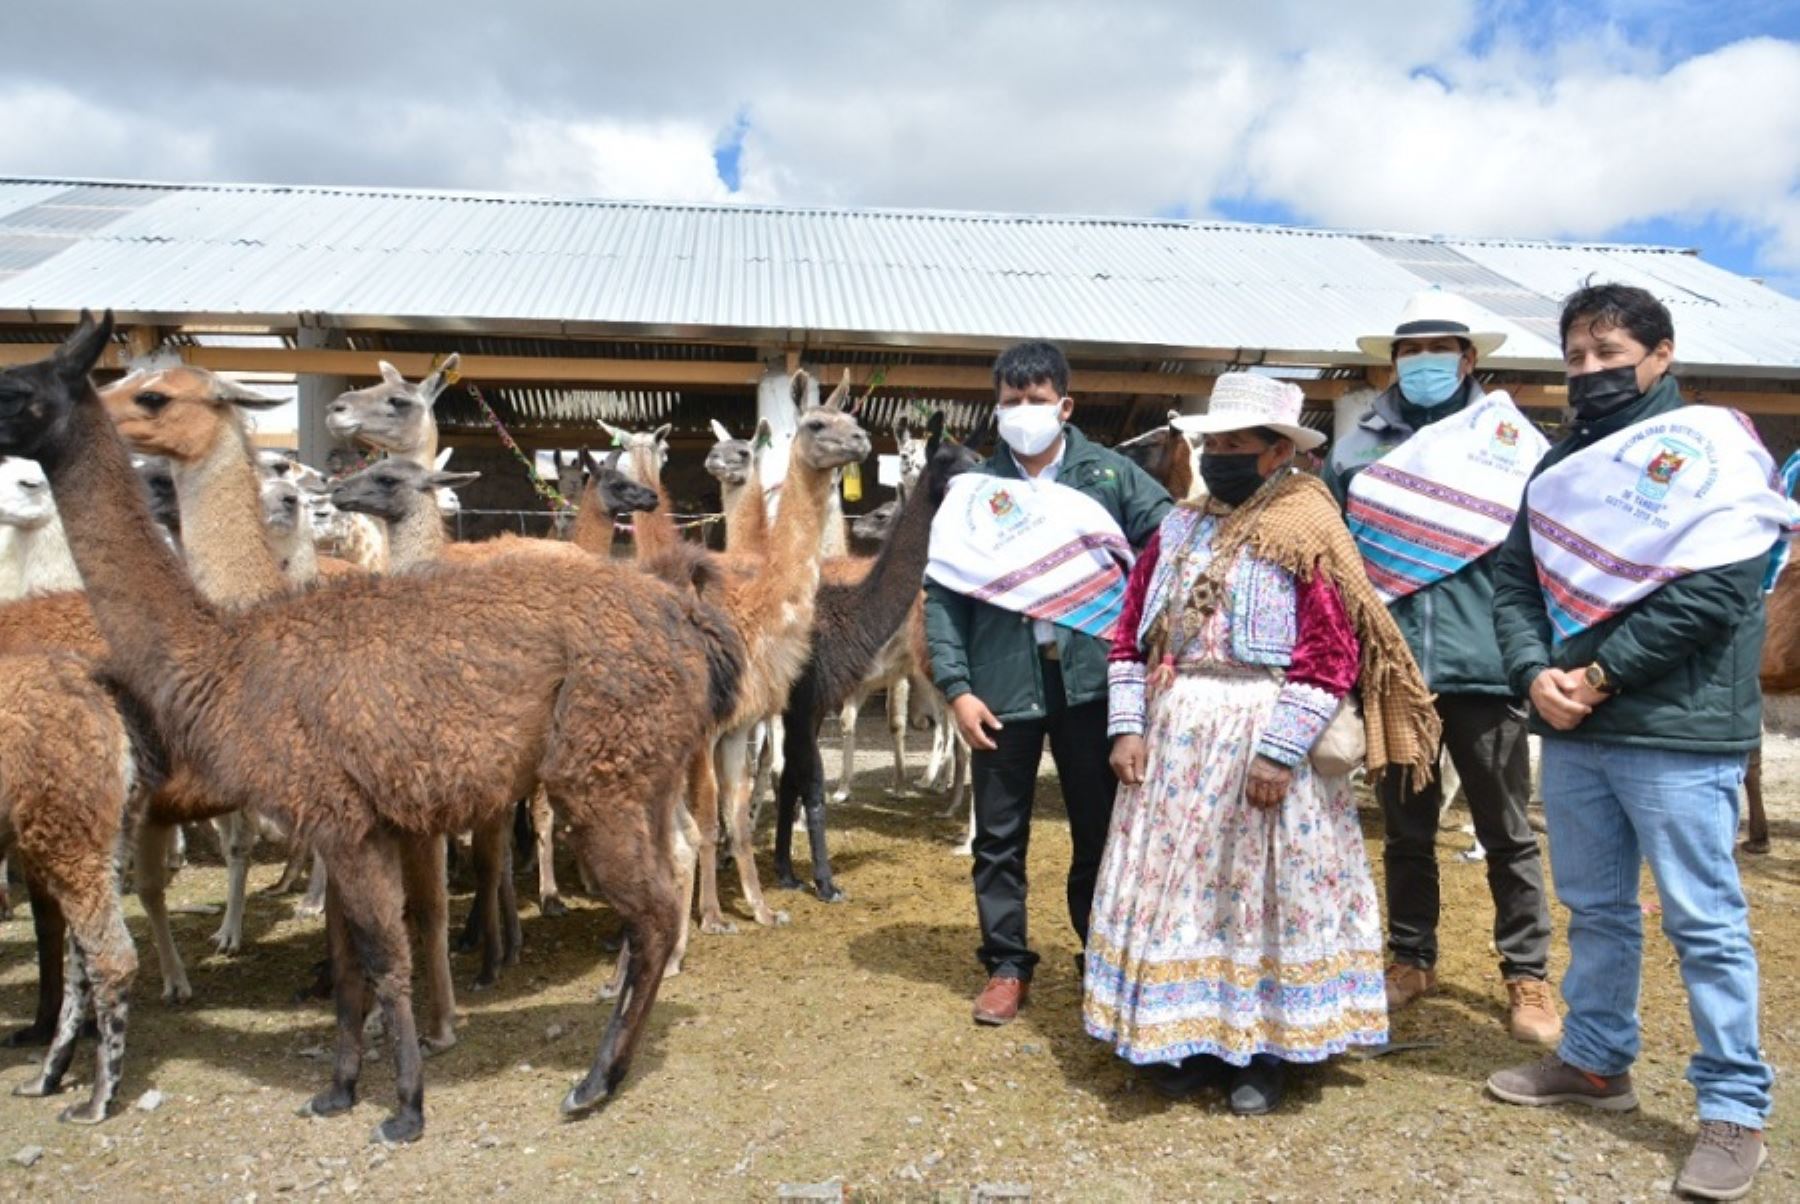 El Ministerio de Desarrollo Agrario y Riego, a través de Agro Rural, implementó 455 cobertizos y 100 fitotoldos en la región Arequipa, con la finalidad de resguardar a 45 500 cabezas de ganado y la producción de hortalizas destinadas a la seguridad alimentaria, ante las bajas temperaturas que se presentan en este departamento del sur peruano.